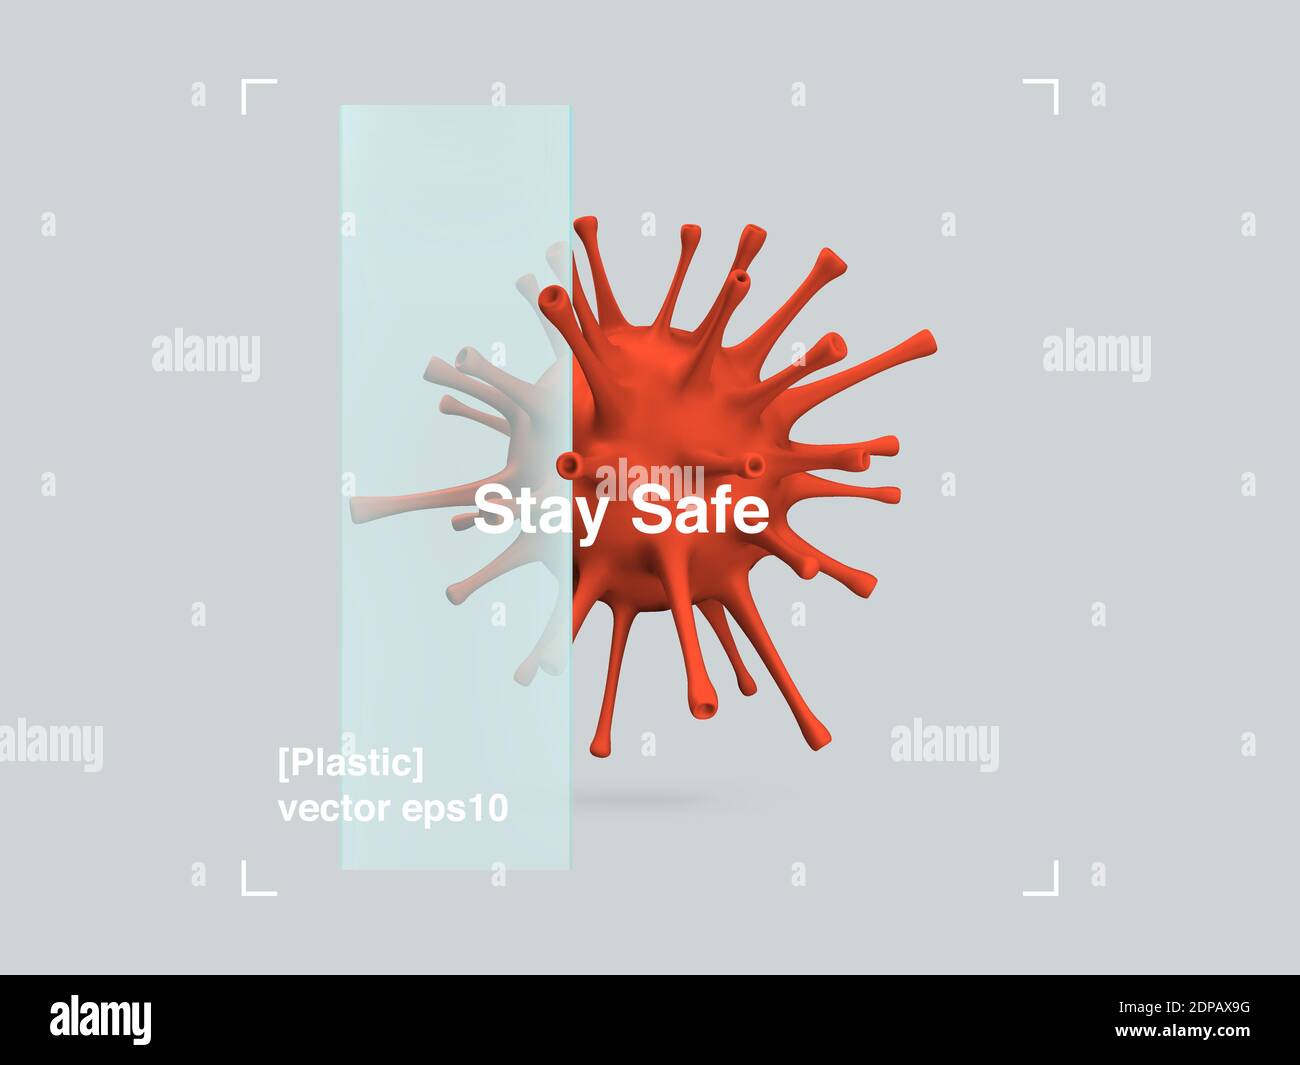 Composizione 3D del virus del vetro e della plastica in uno stile di design moderno. COVID-19 Banner Pandemic Stay Safe. Poster di disegno di illustrazione astratta. Vettore e Illustrazione Vettoriale